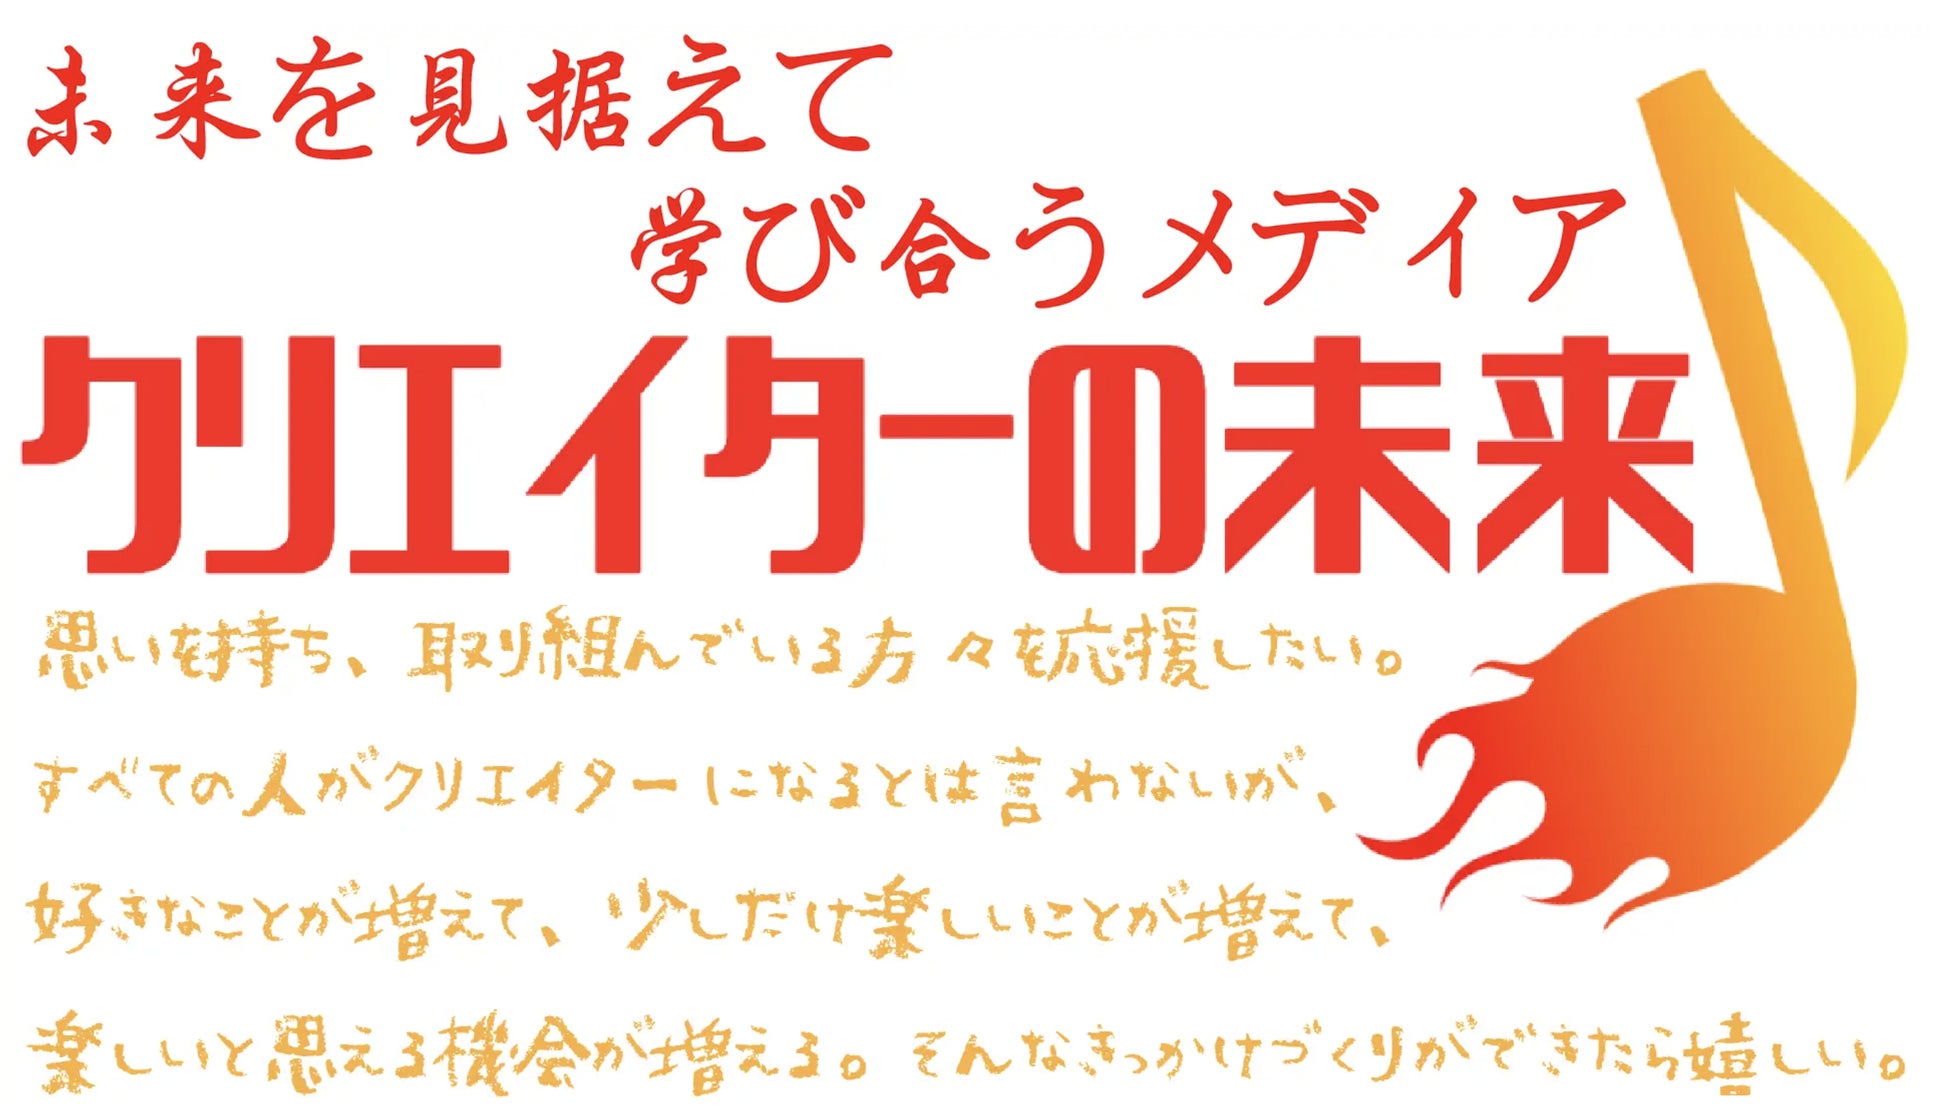 国内外トップスケーターによる人気のアイスショーが名古屋に！「メ～テレ60周年 Fantasy on Ice 2022 ㏌ NAGOYA」６月３日(金)から3日間、日本ガイシホールで初開催！